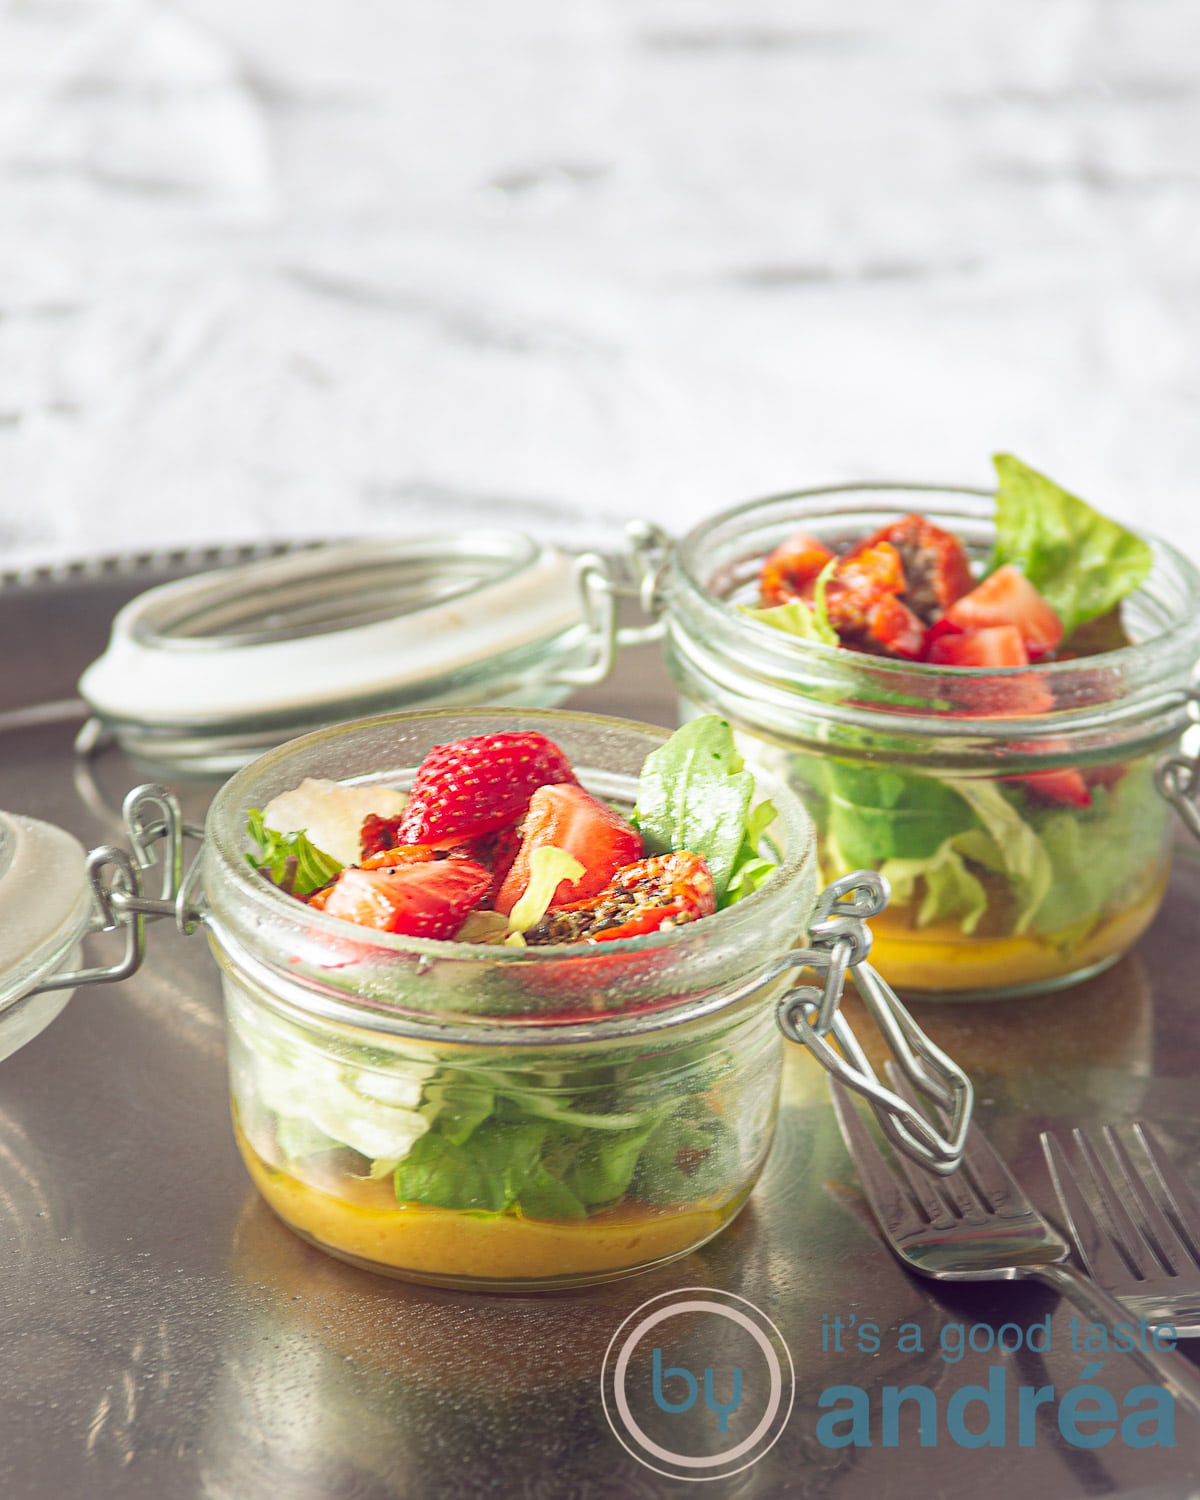 twee potten met een salade met zongedroogde tomaten, aardbeien en een honing mosterd dressing